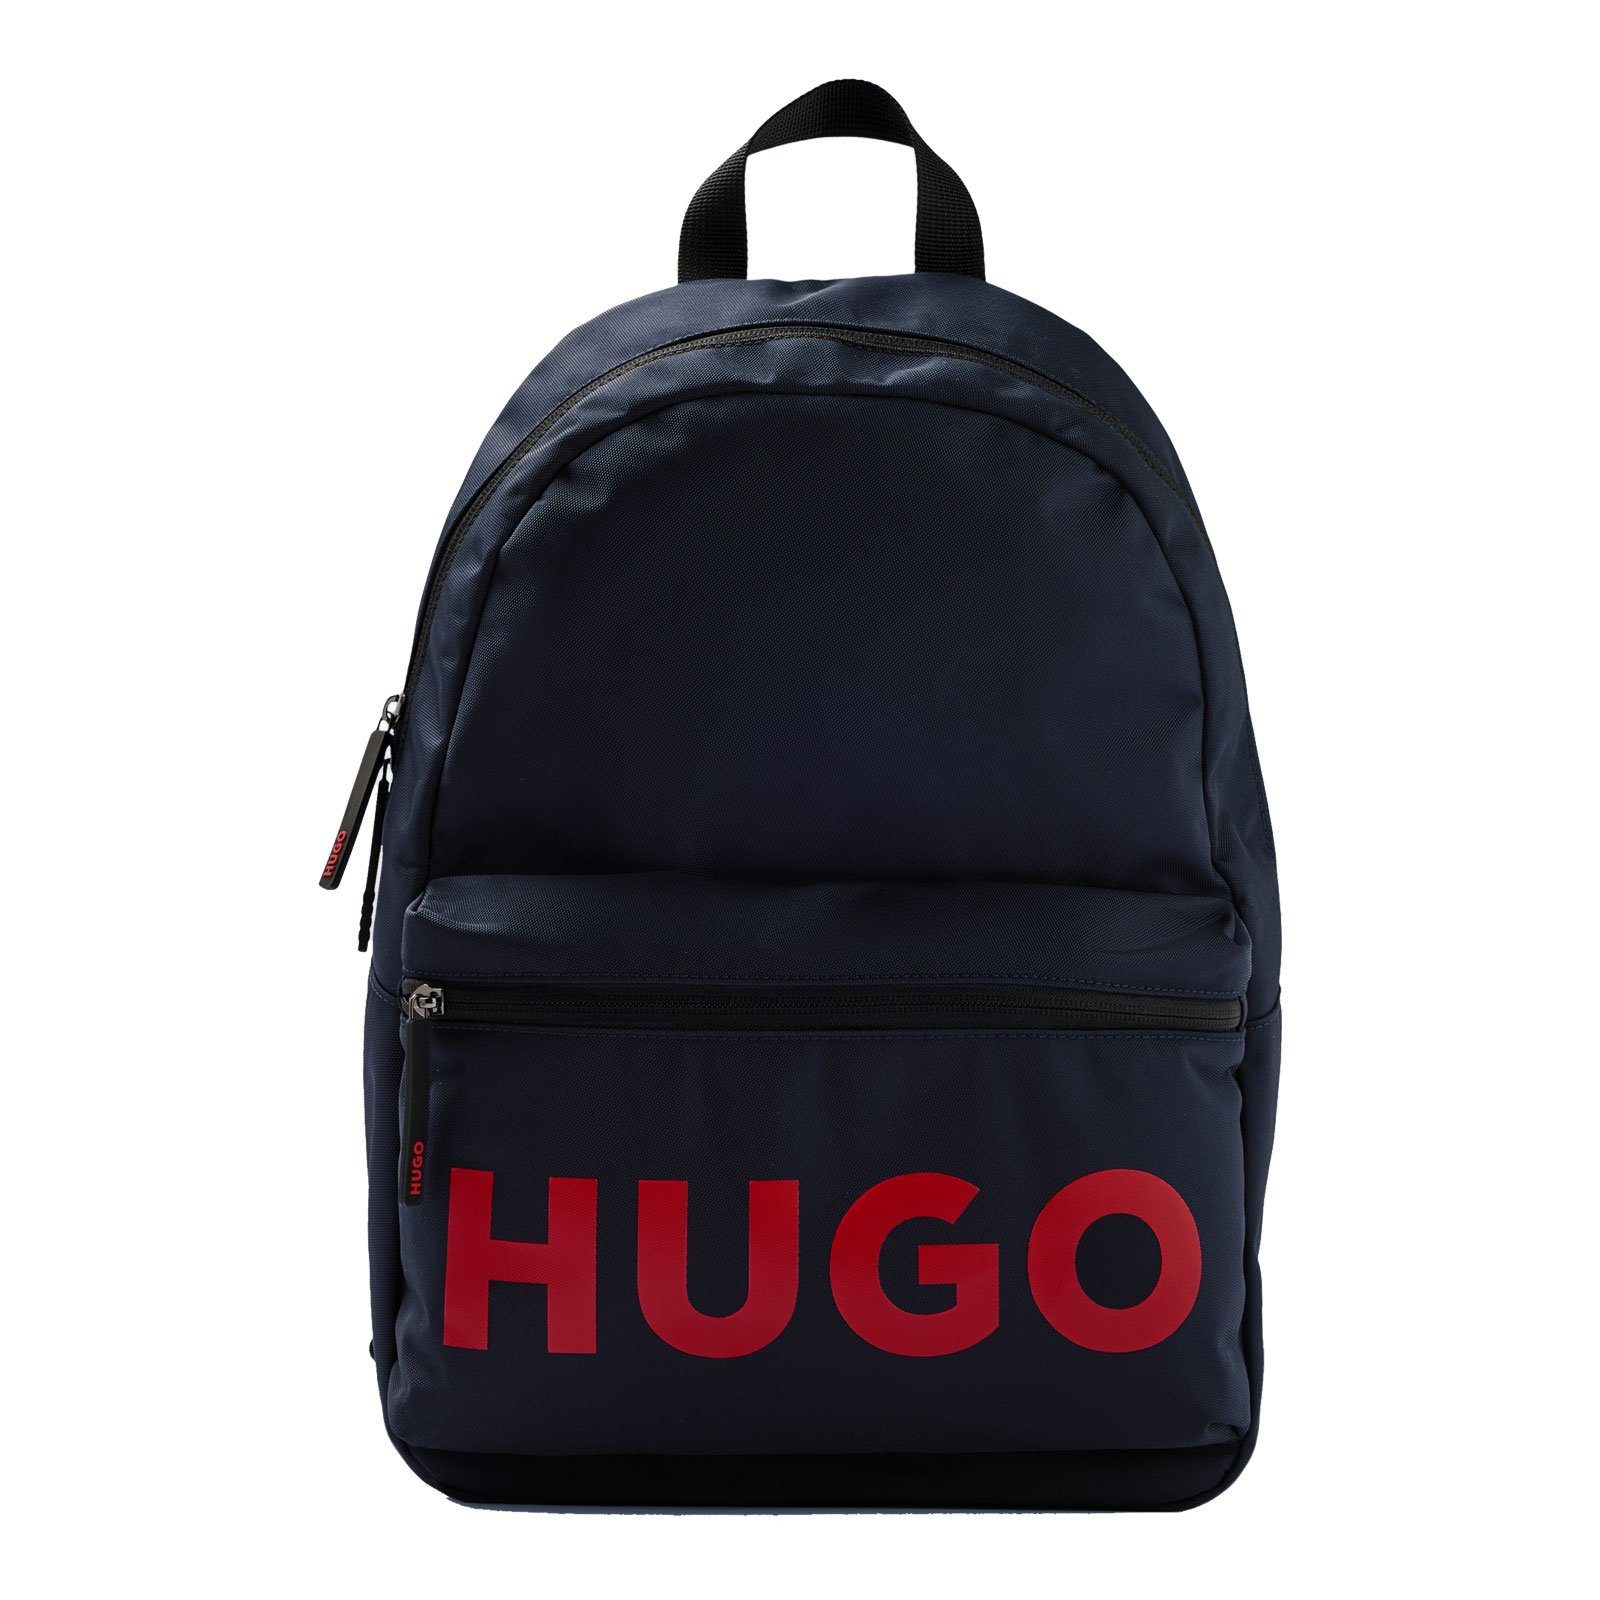 HUGO BL, charakteristischem Rucksack Logo Ethon mit Blau